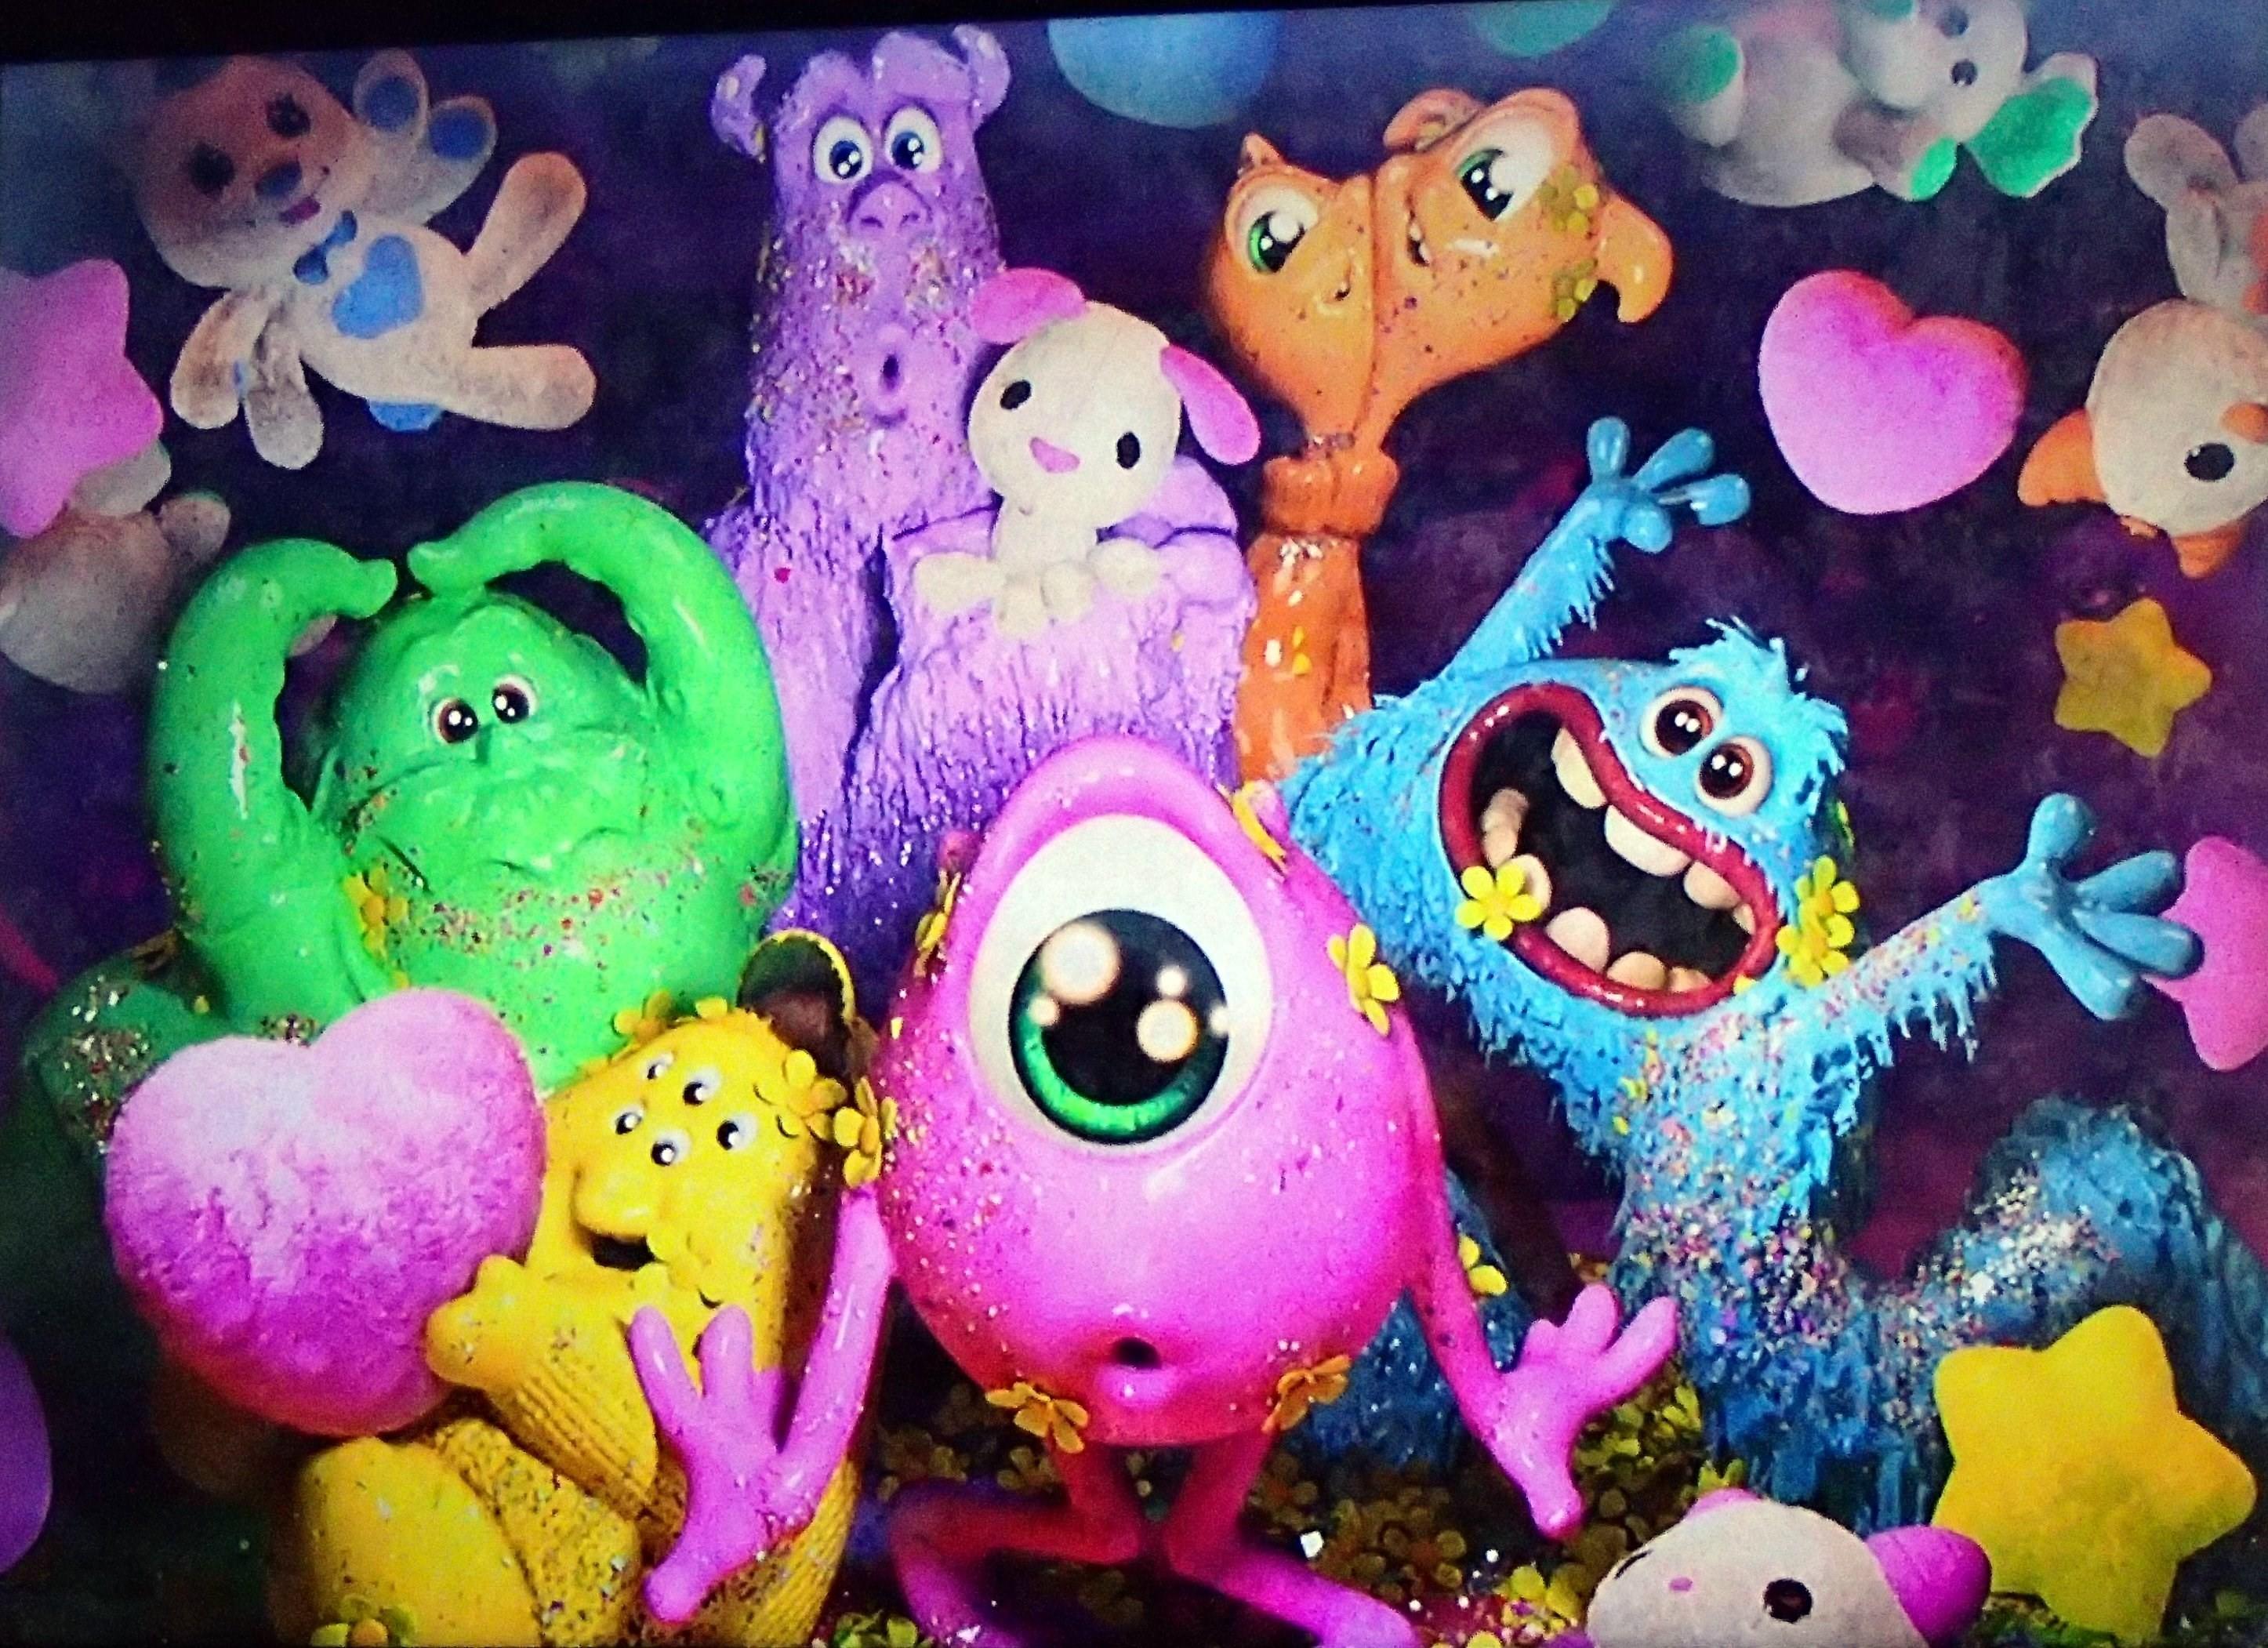 Hình nền Monsters Inc dễ thương sẽ khiến bạn liên tưởng đến một thế giới đầy màu sắc và đáng yêu của các quái vật trong phim. Những hình ảnh này sẽ đem lại một không gian vui tươi và đầy sáng tạo cho điện thoại hoặc máy tính của bạn.